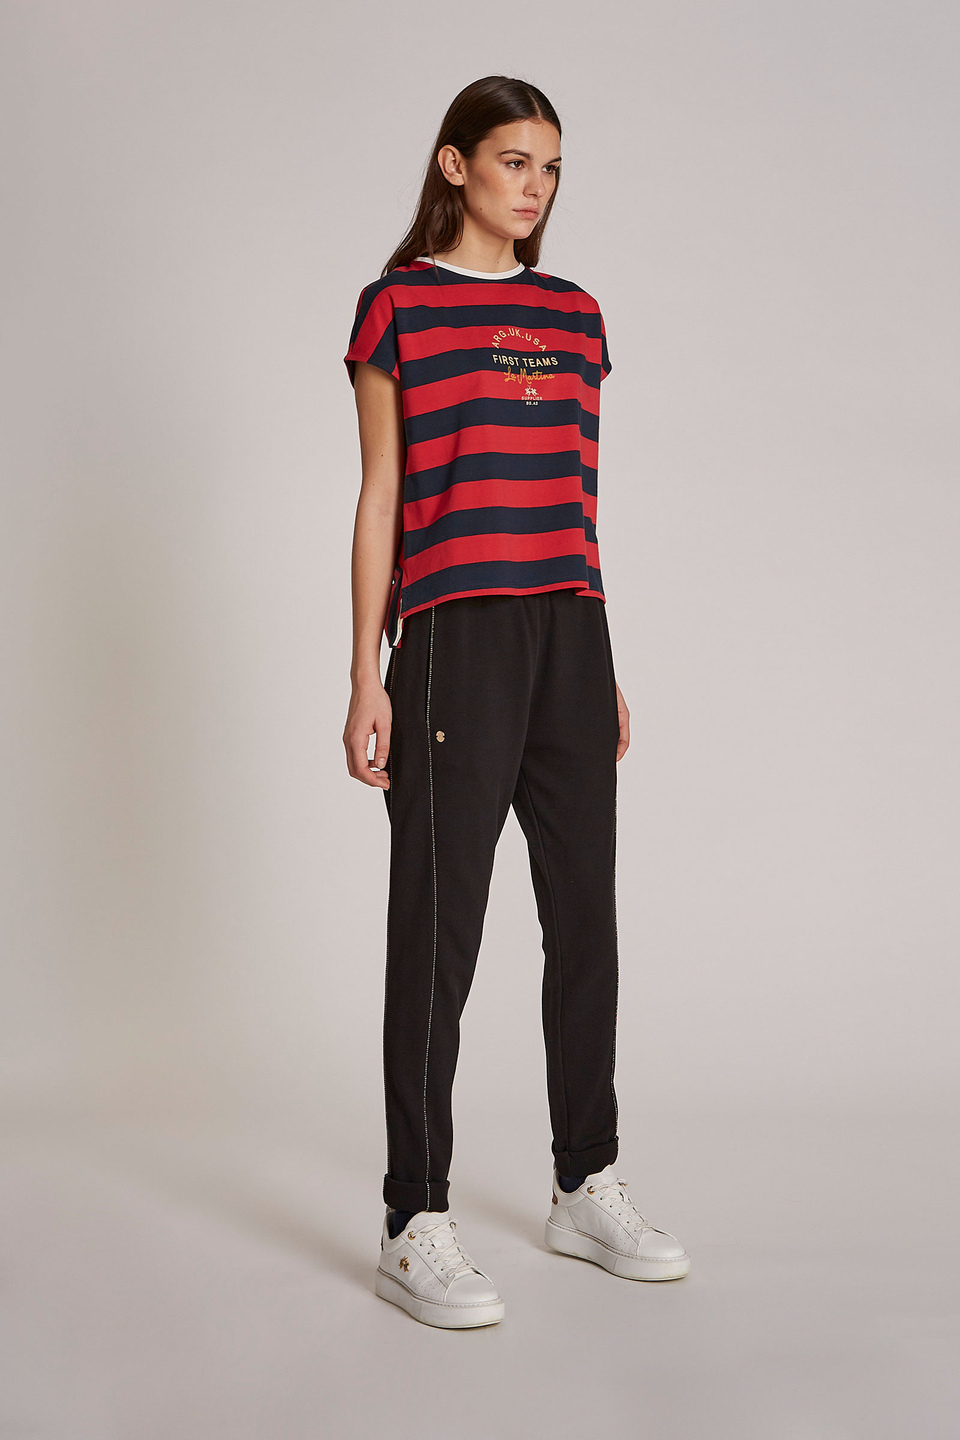 Damen-T-Shirt aus 100 % Baumwolle mit zweifarbigen Streifen im Regular Fit - La Martina - Official Online Shop